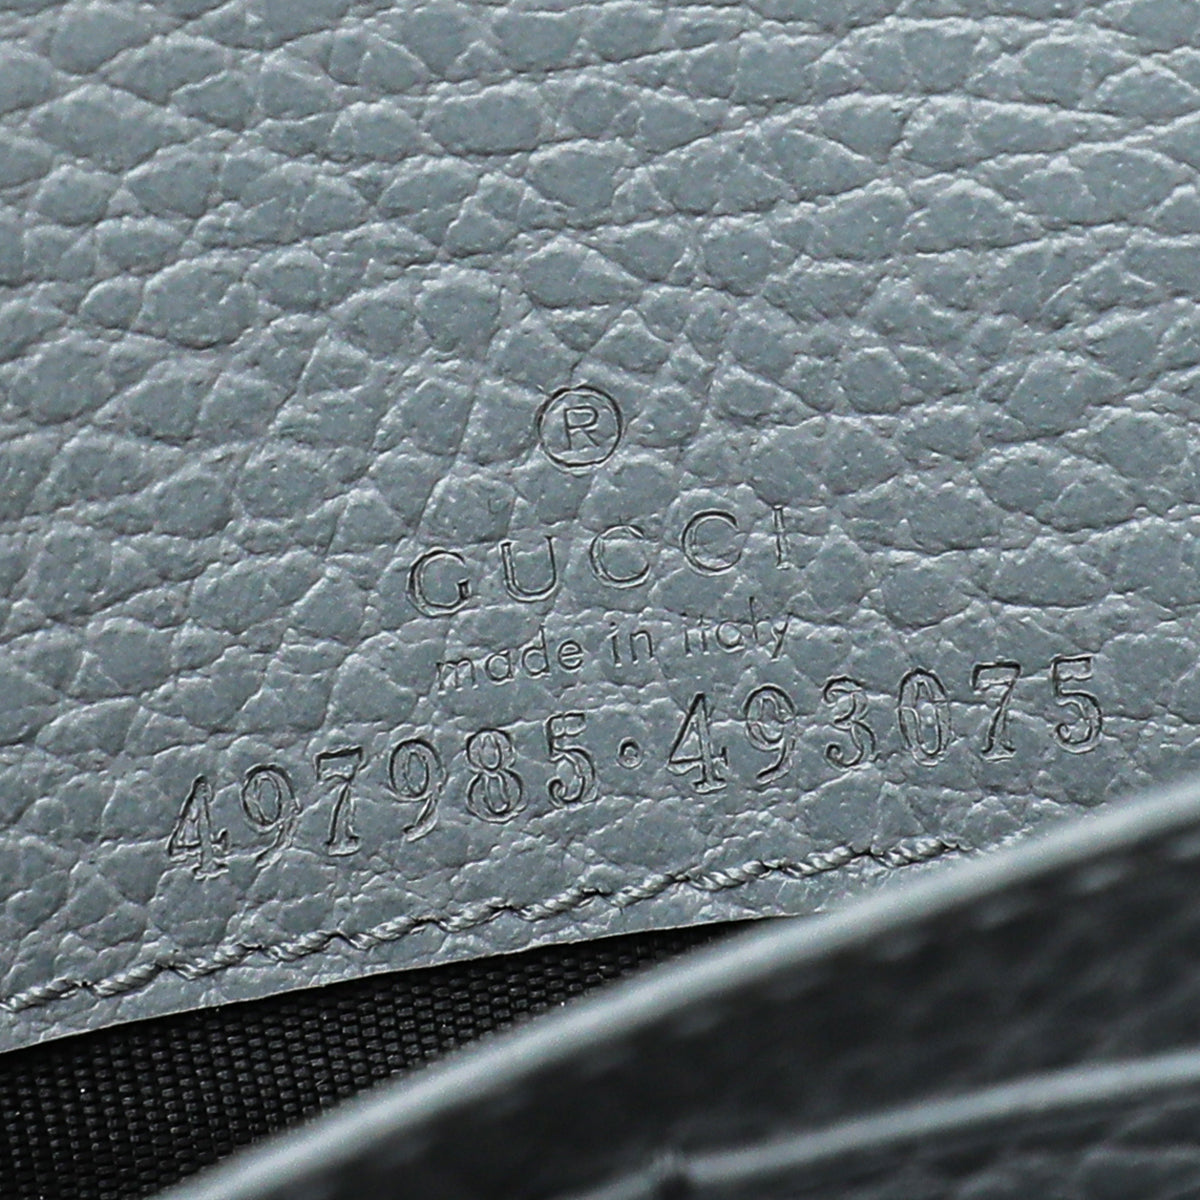 Gucci Grey GG Marmont Mini Chain Bag